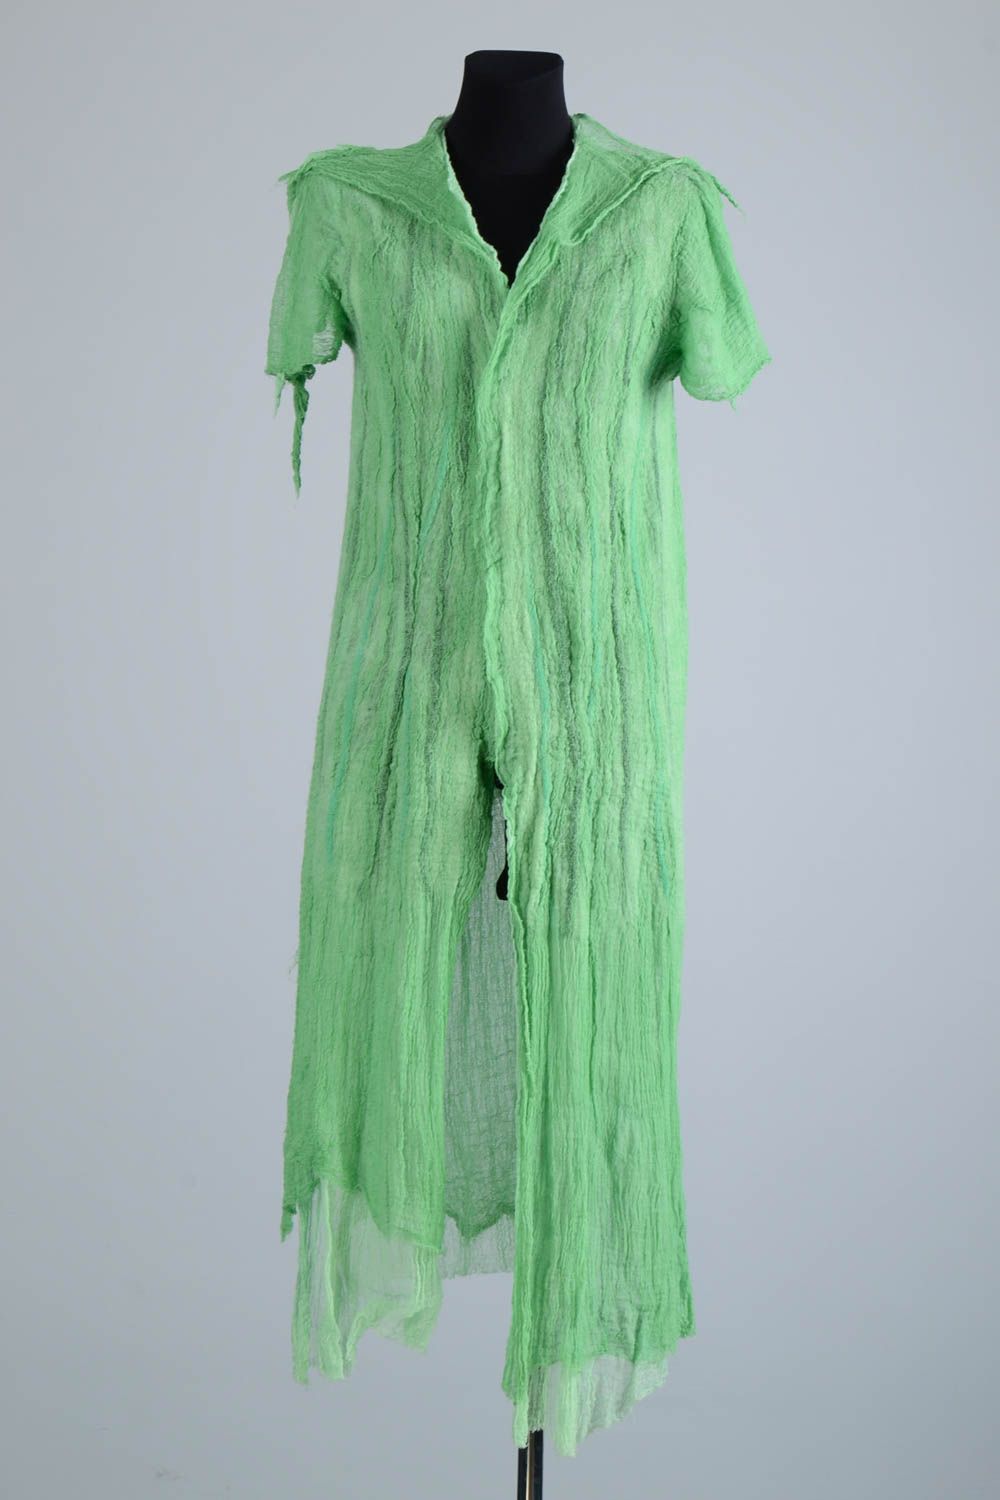 Manteau été femme fait main Manteau laine feutrée vert léger Vêtement femme photo 1